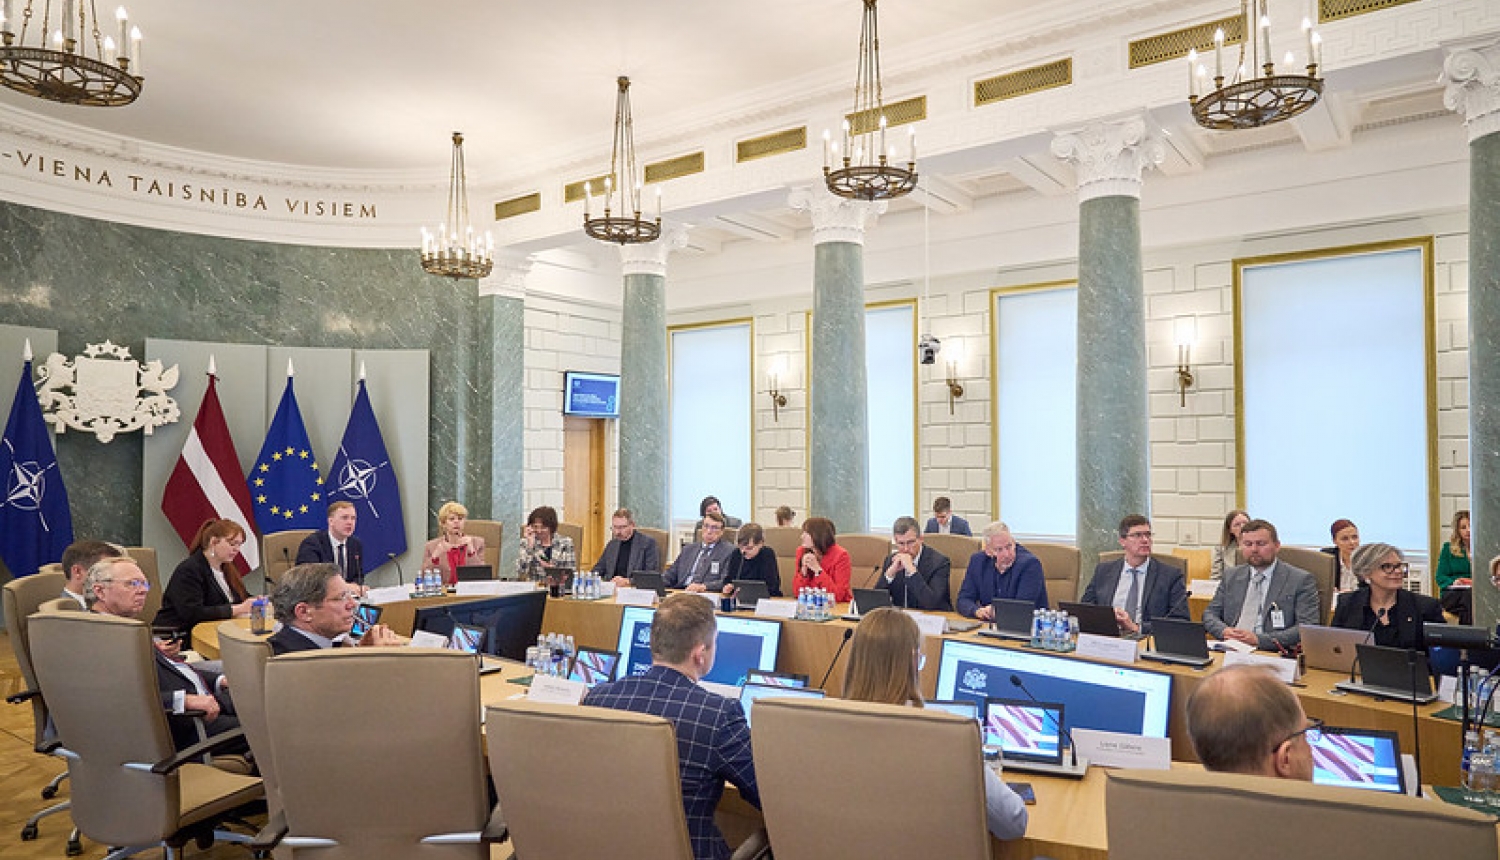 Latvijas Pētniecības un inovācijas stratēģiskās padomes sēde Ministru kabineta Zaļajā zālē. 